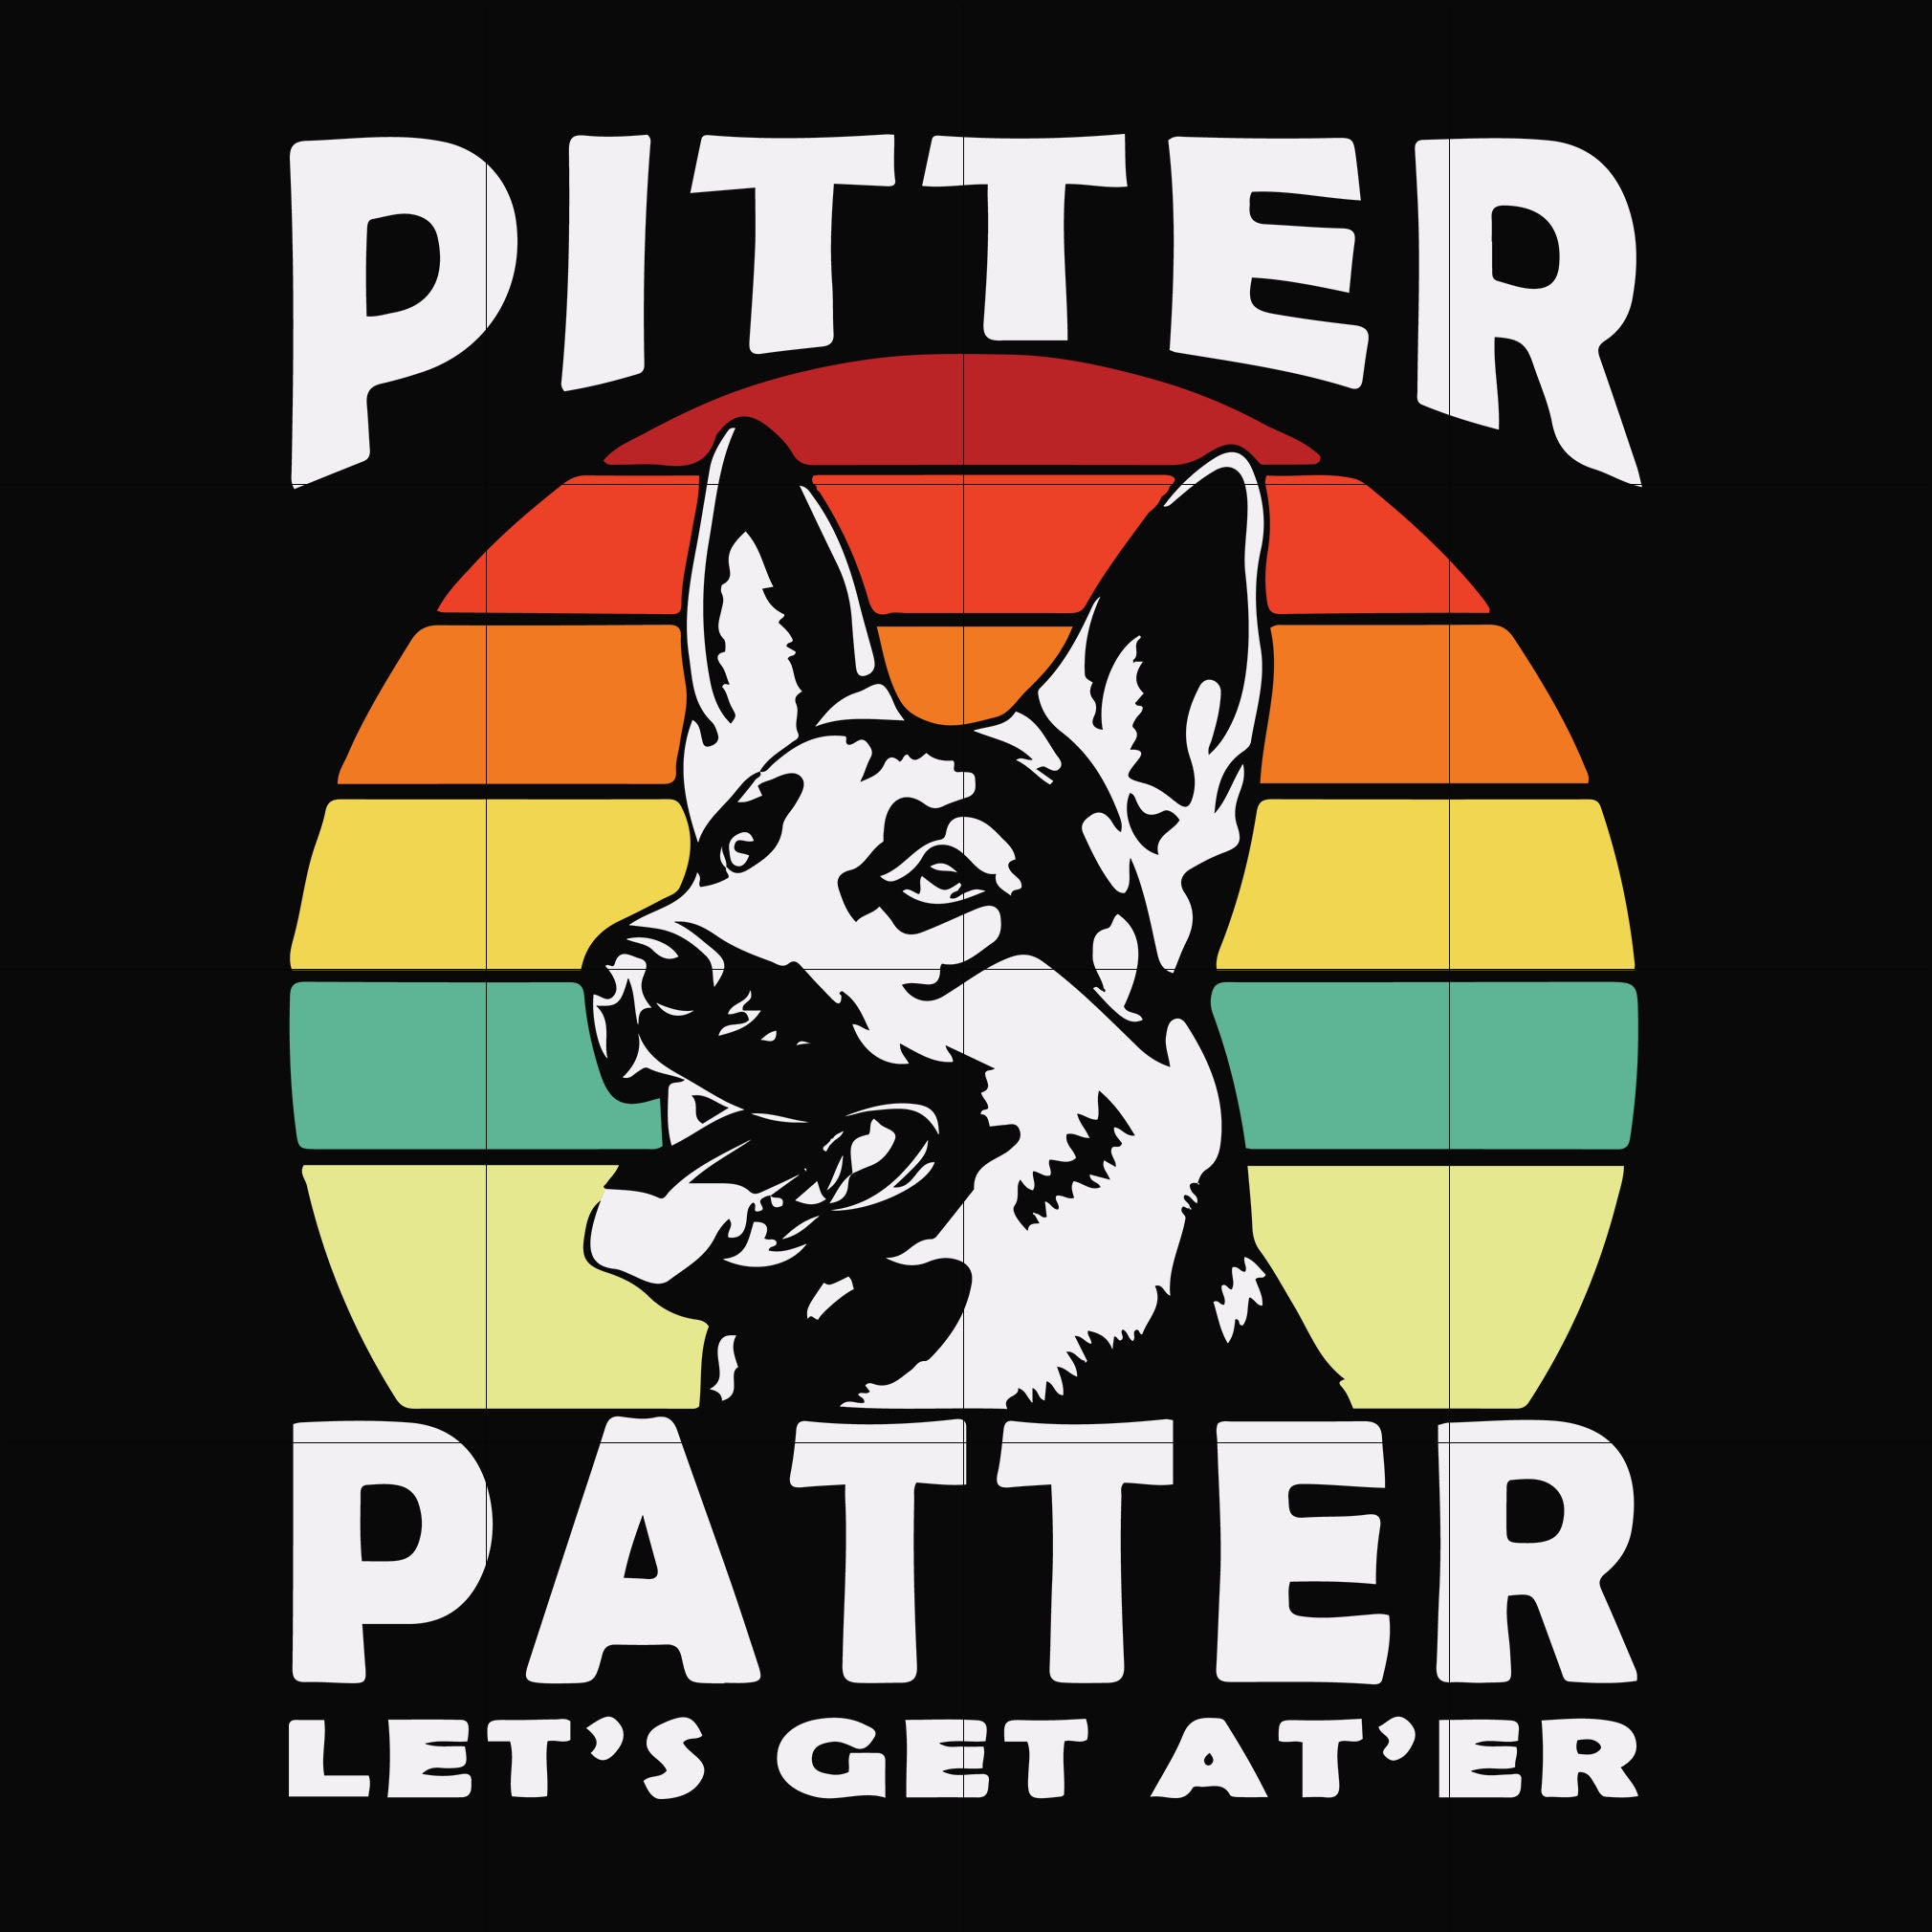 Pitter patter let's get at'er svg, png, dxf, eps file FN000977